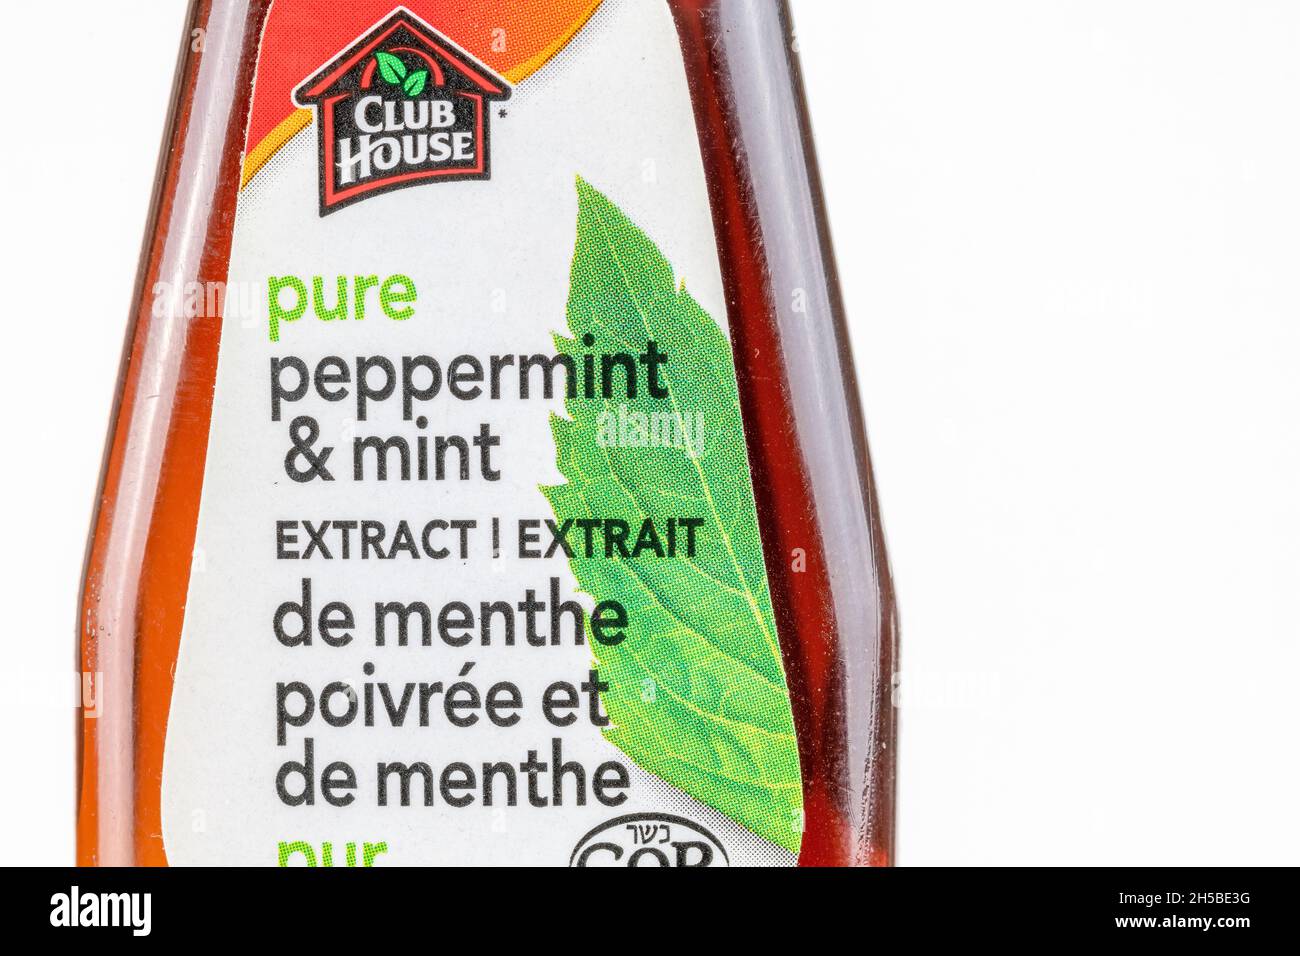 Etichetta in bottiglia di marca Club House puro menta piperita e menta ingrediente. 7 novembre 2021 Foto Stock